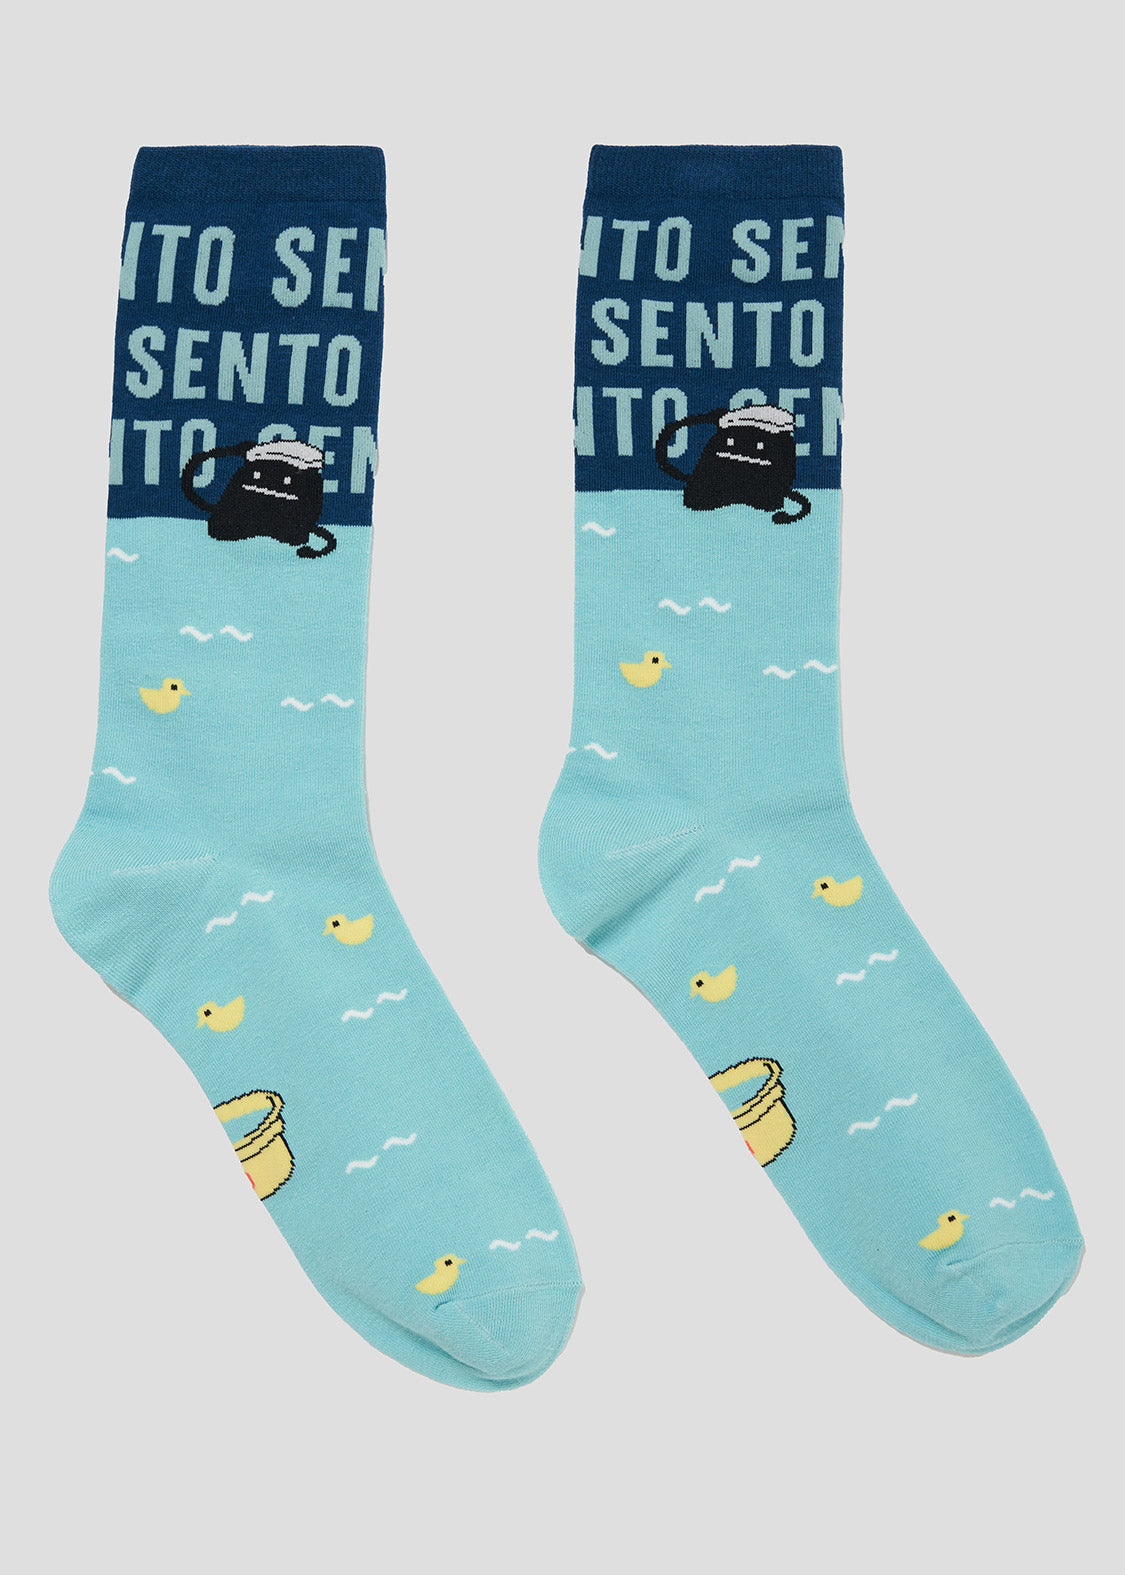 Long Socks (Sento BS)